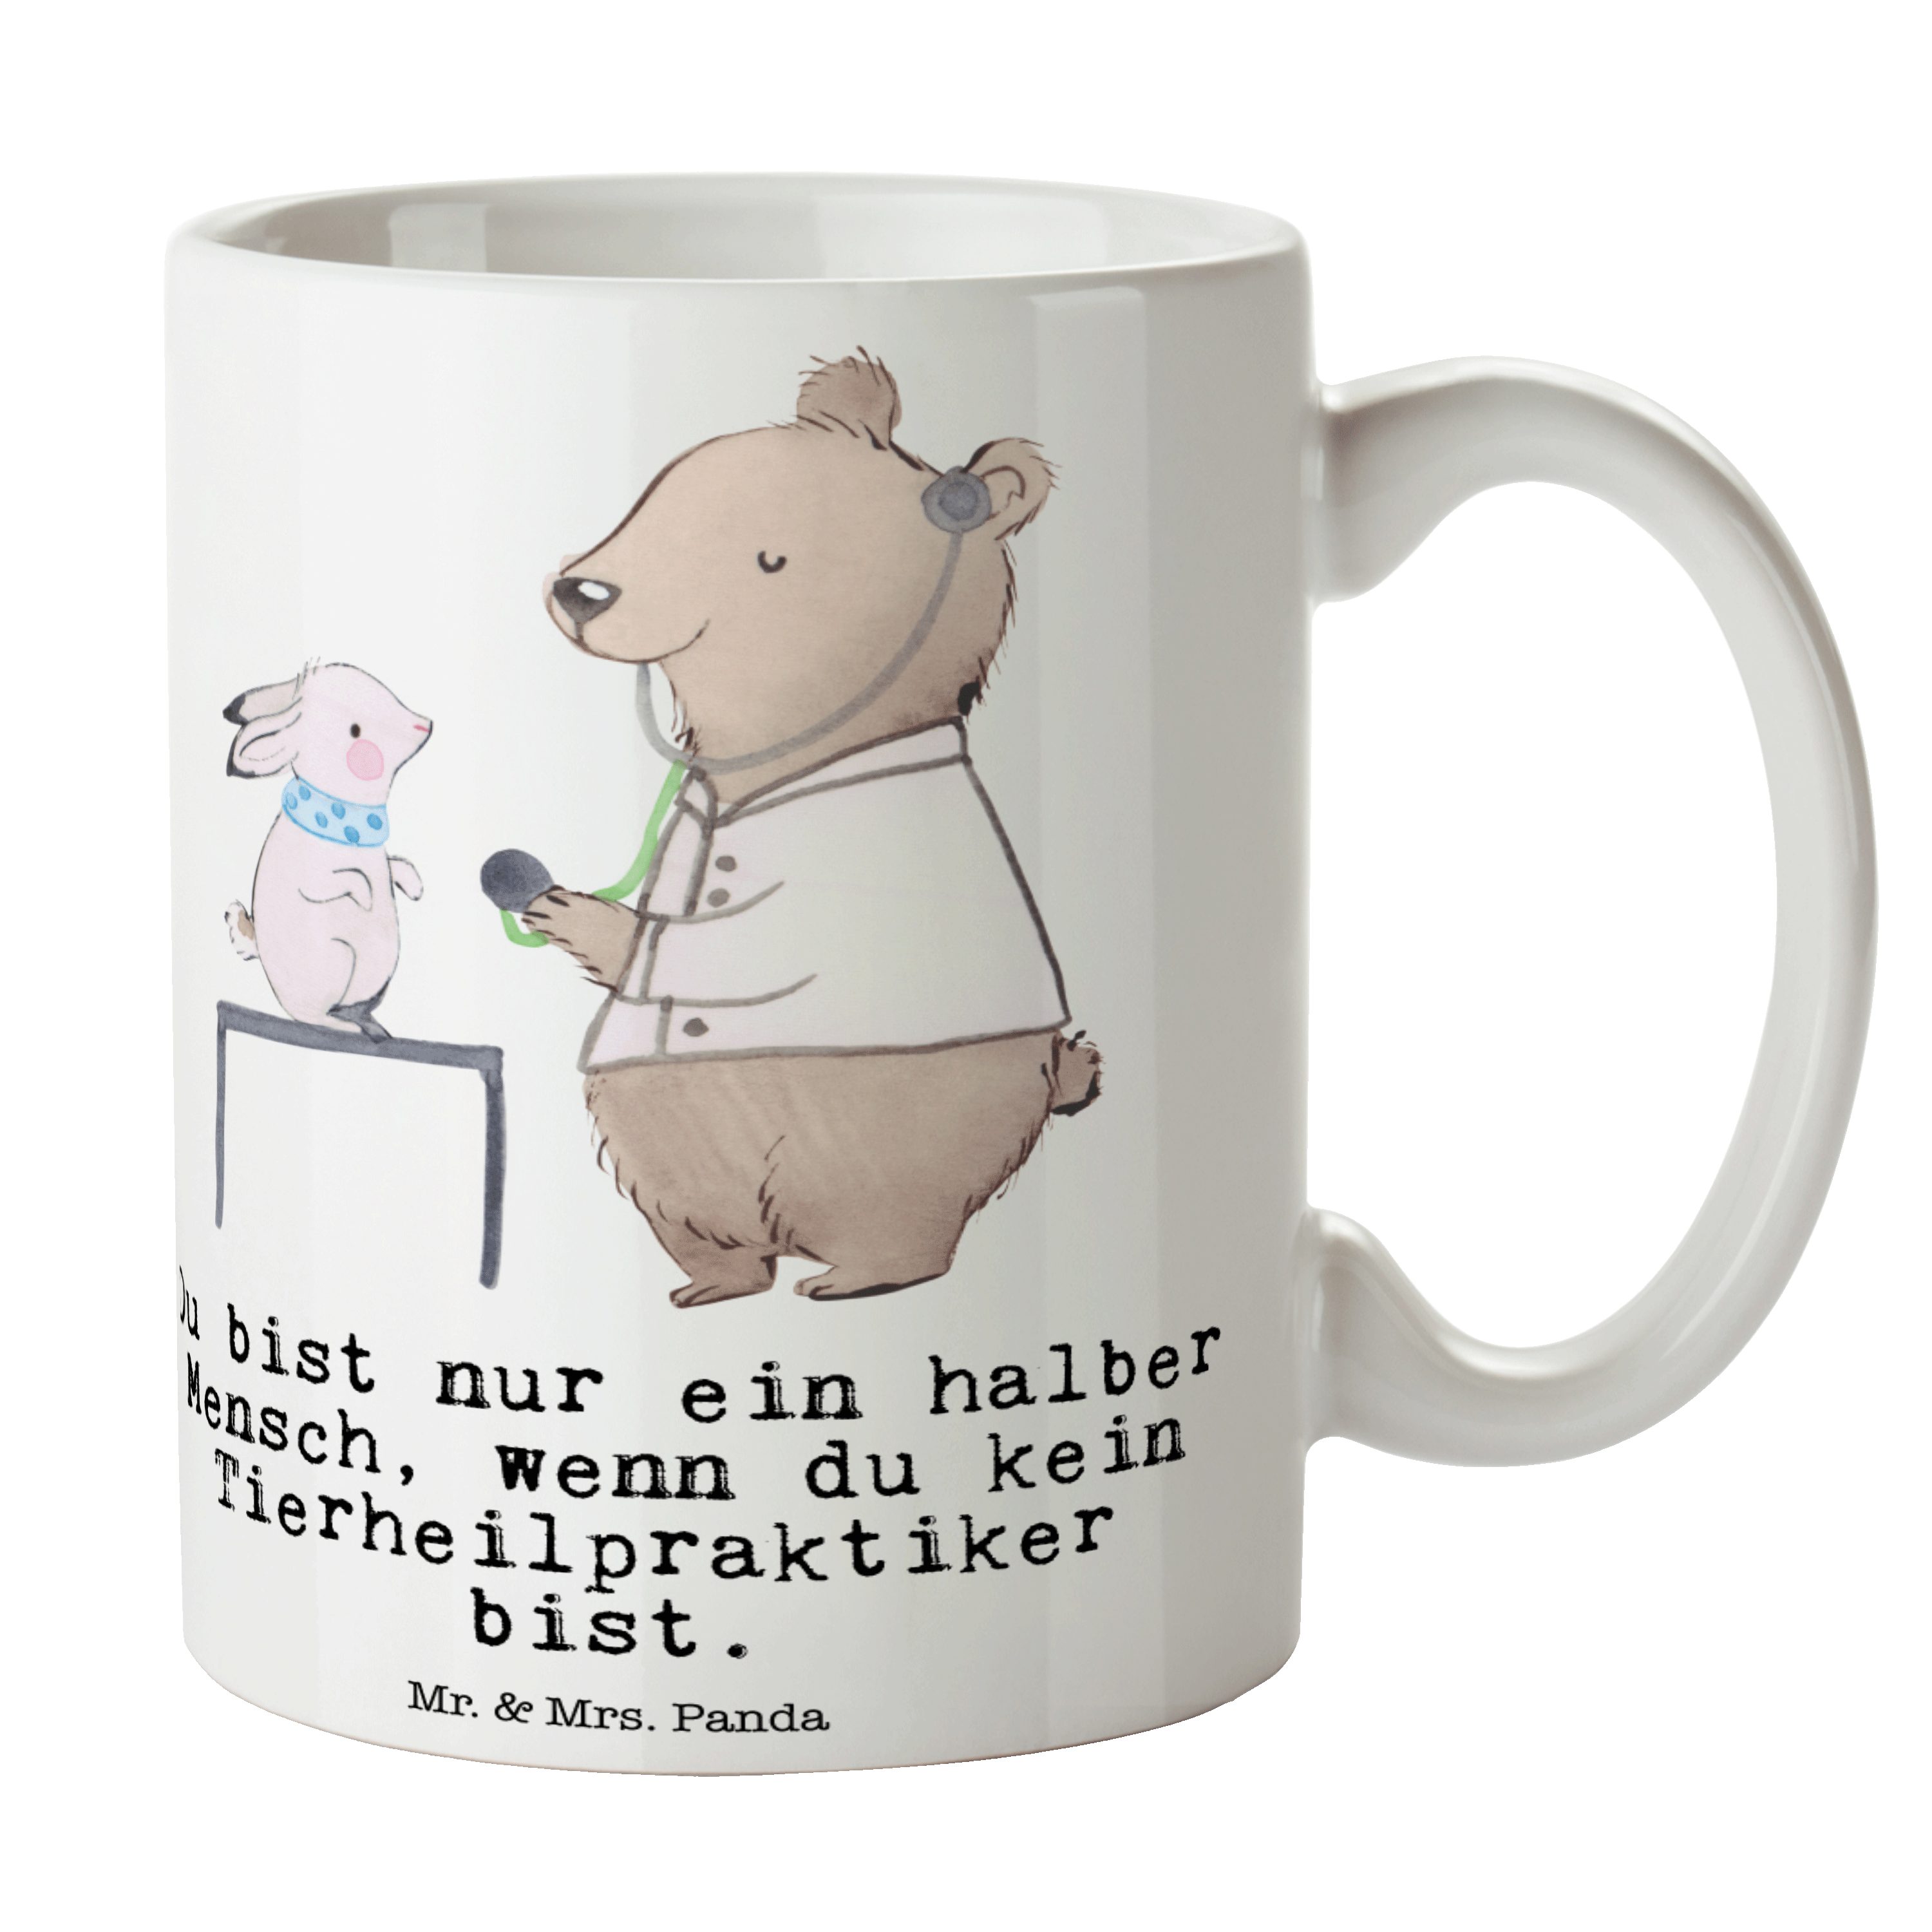 Mr. & Mrs. Panda Tasse Tierheilpraktiker mit Herz - Weiß - Geschenk, Tasse Sprüche, Tasse Mo, Keramik